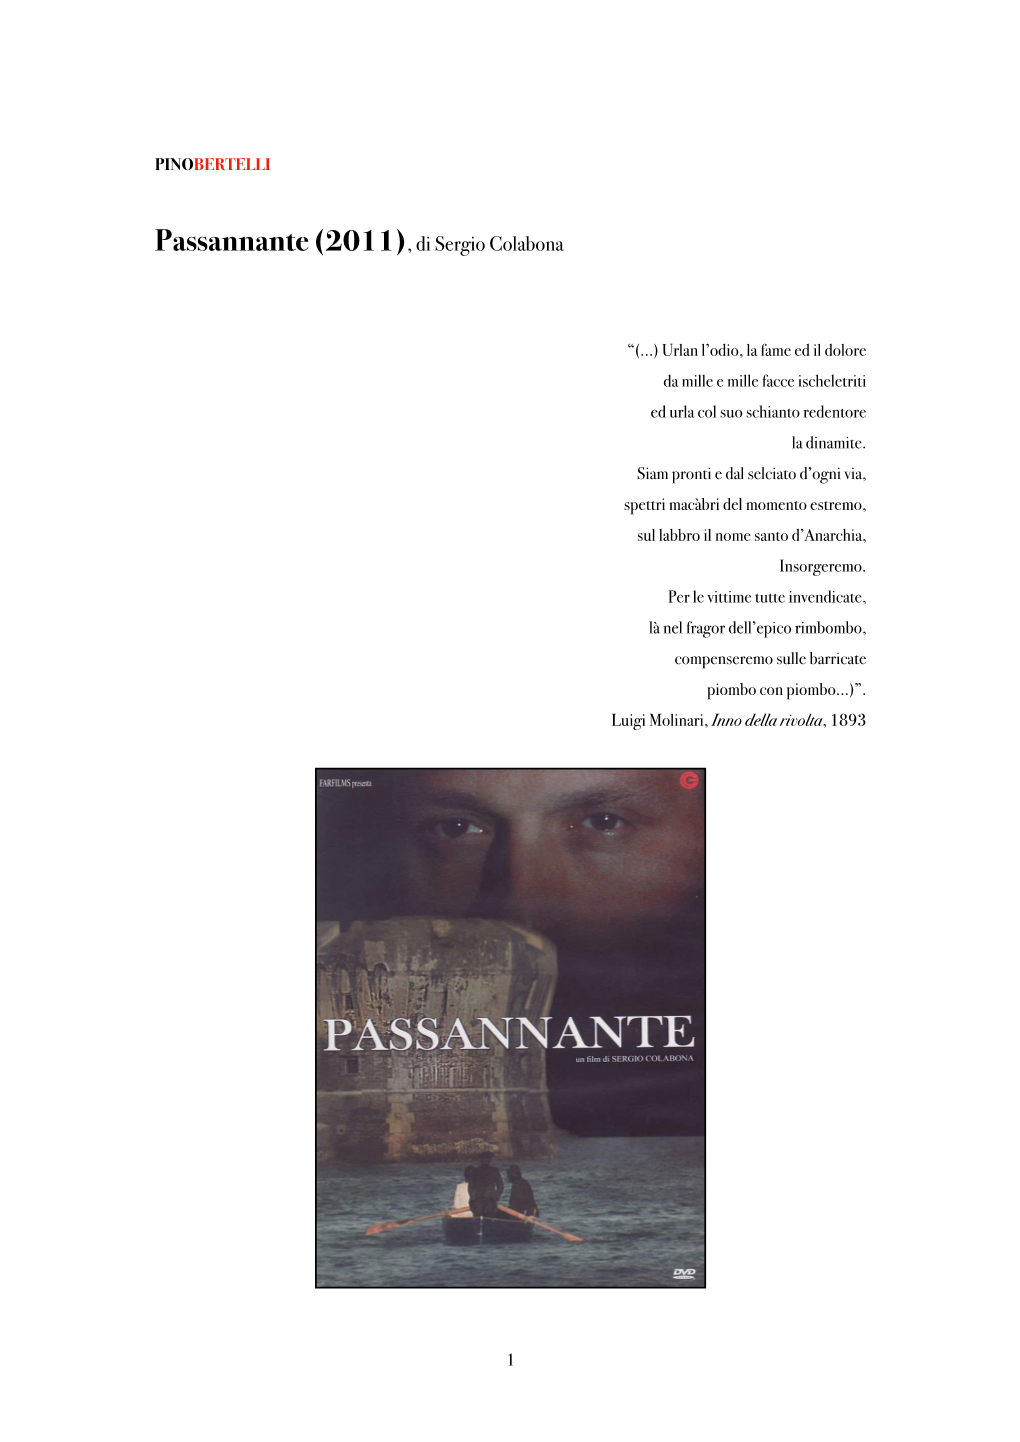 Passannante (2011), Di Sergio Colabona